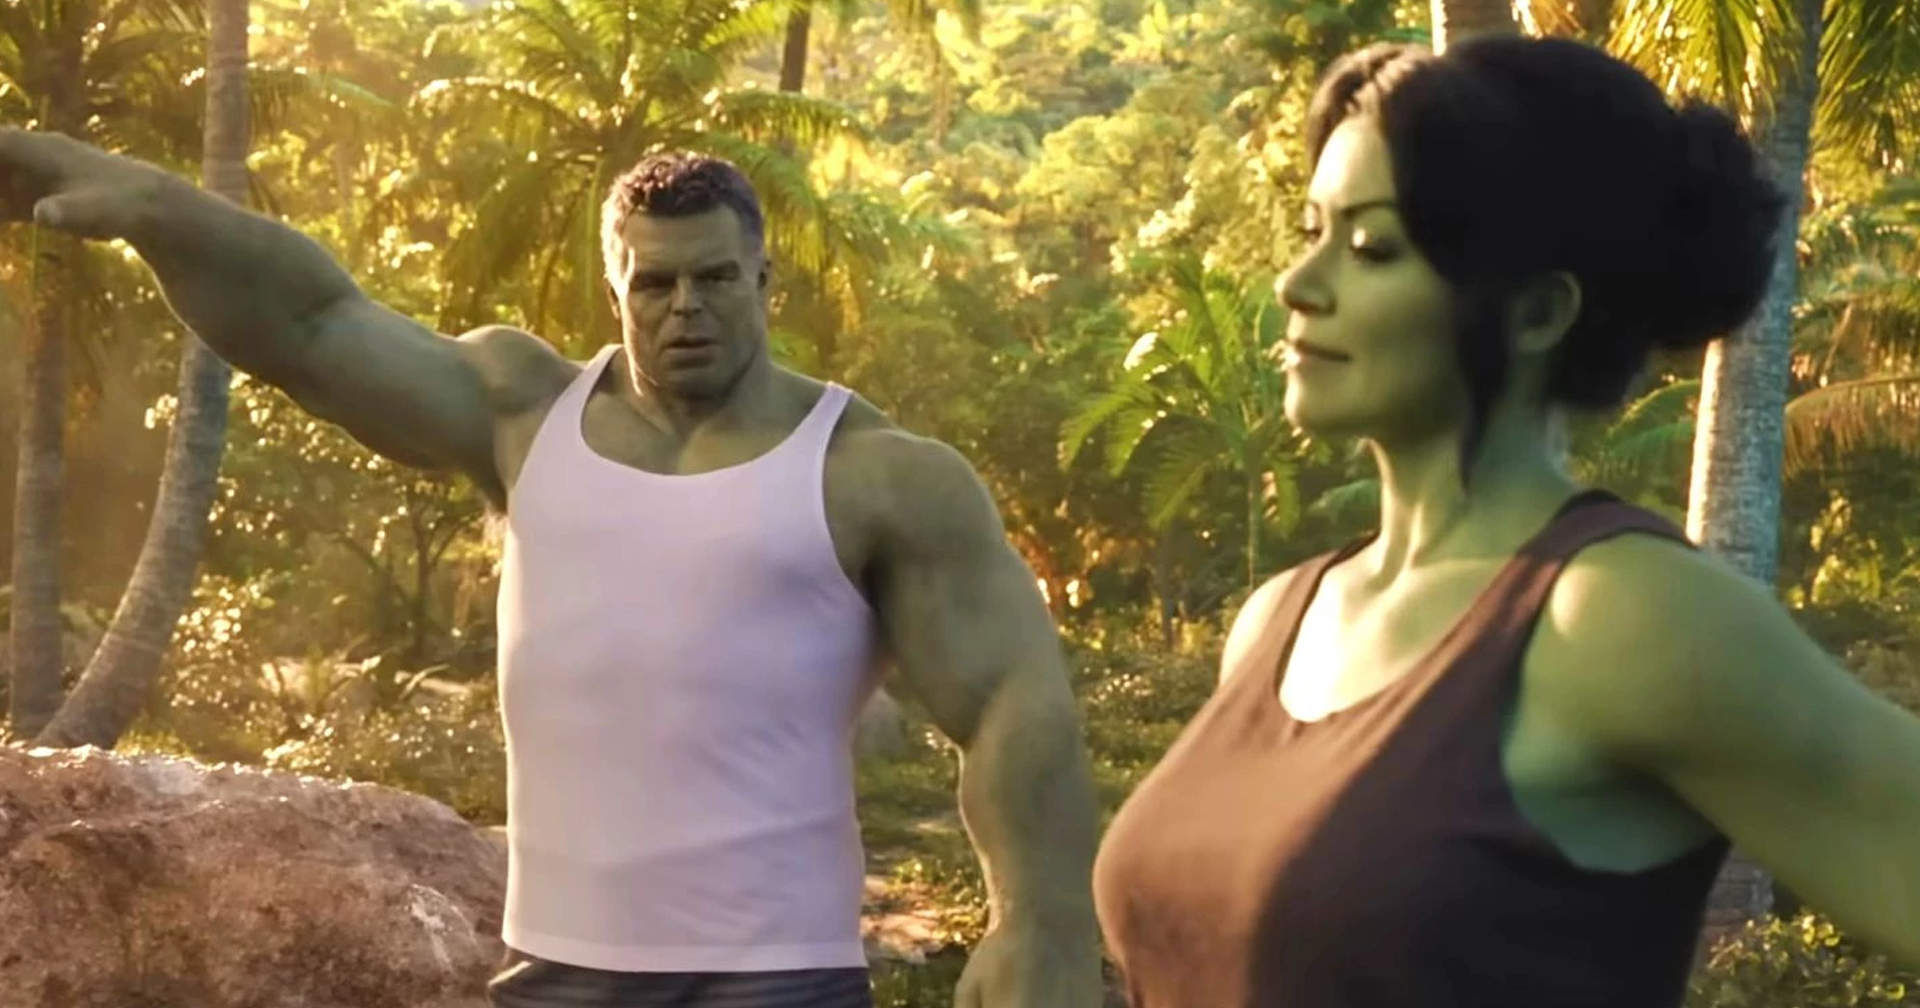 สิ่งที่ควรรู้ก่อนดู She-Hulk: Attorney at Law กำปั้นแห่งความยุติธรรม ด้วยพลังของ ‘ทนายสายลุย’